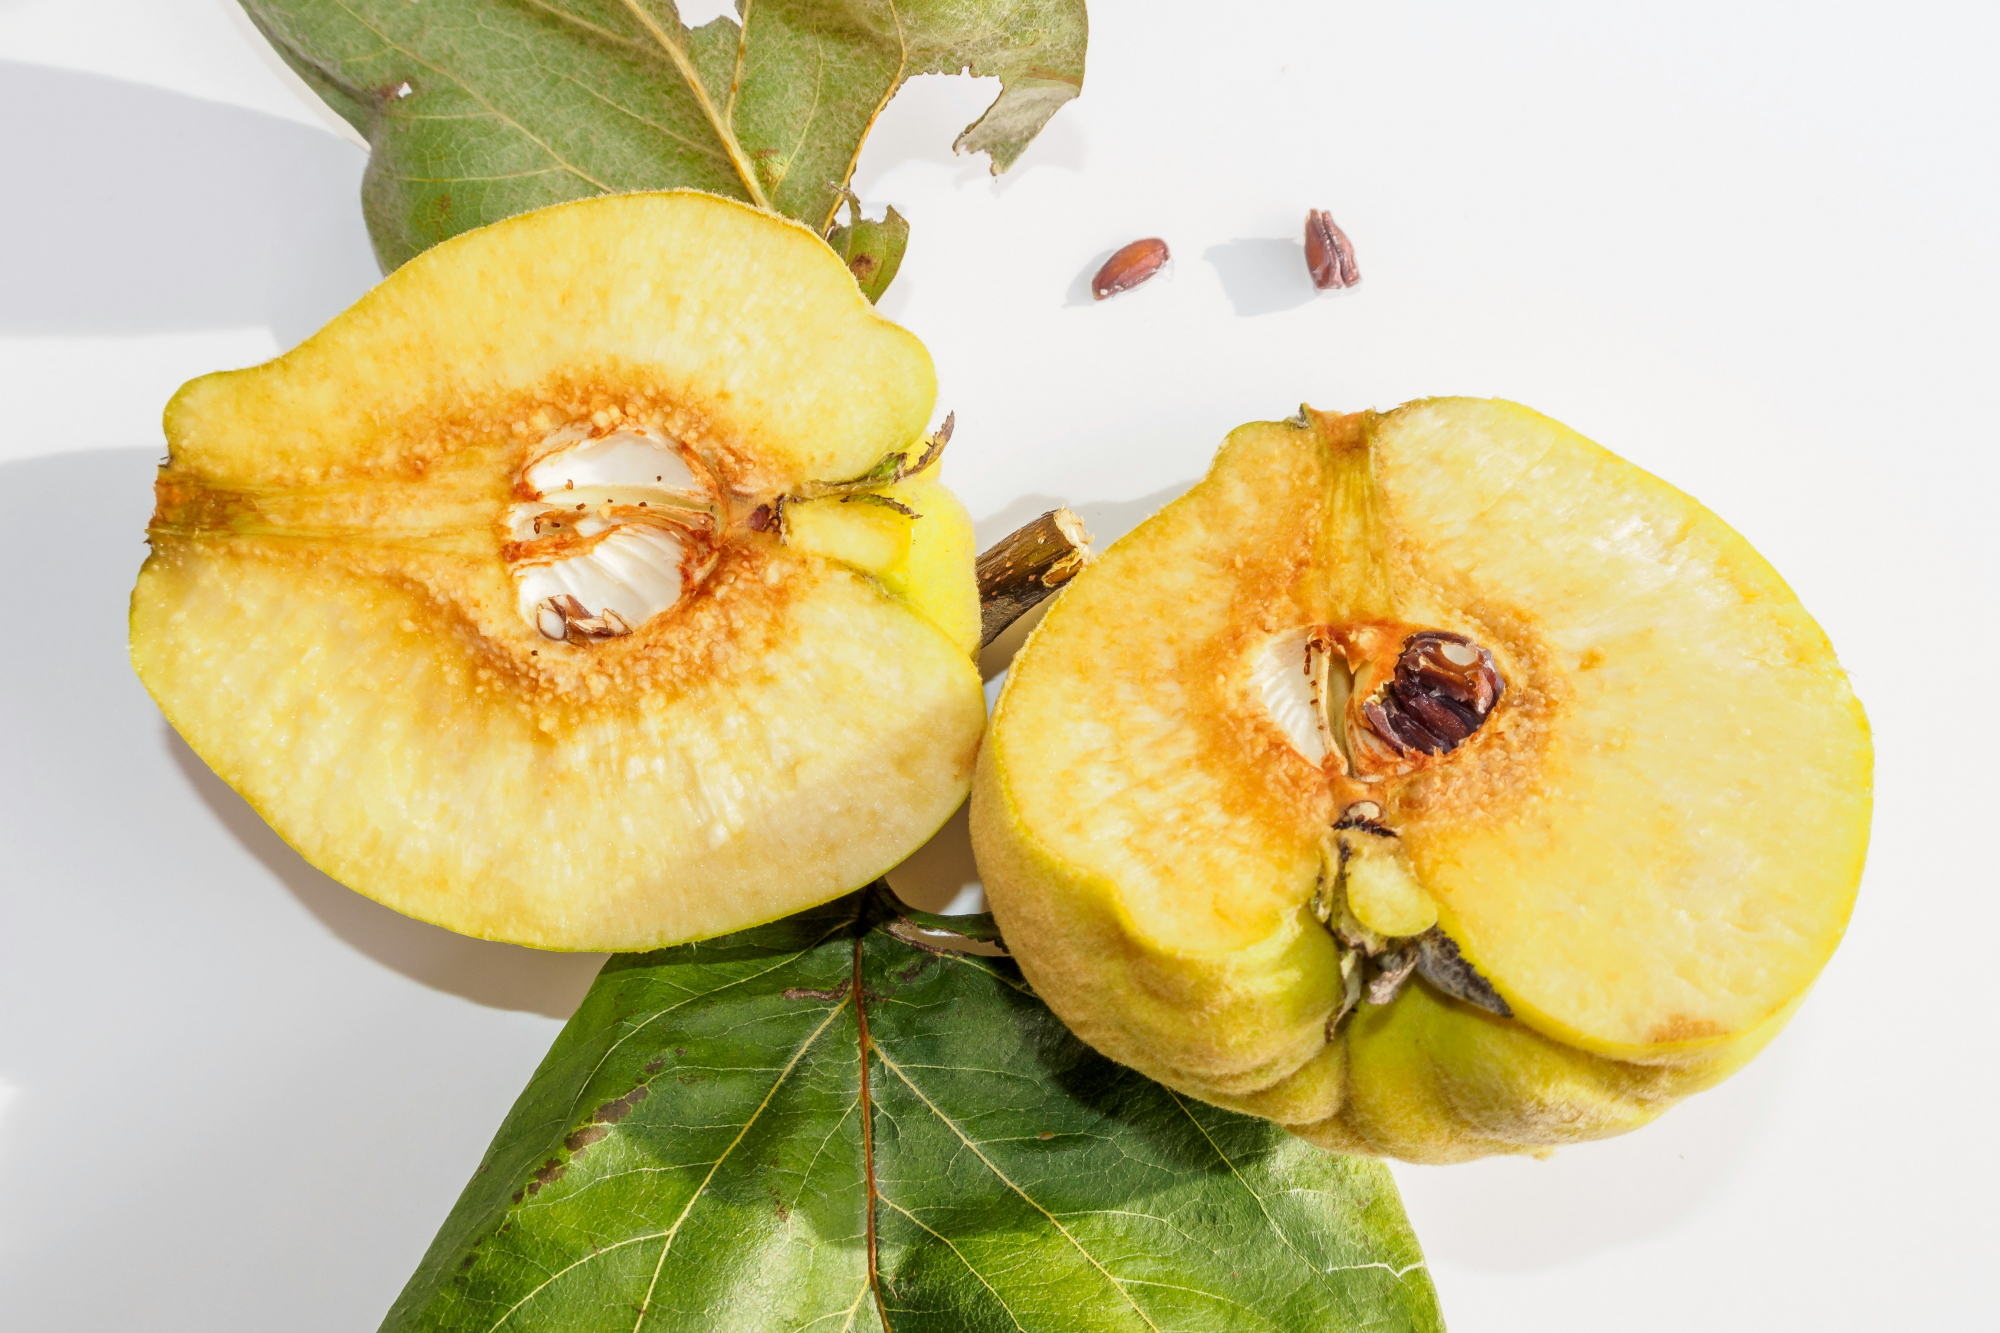 découvrez tout sur le fruit quince : origine, caractéristiques, recettes et bien plus encore. savourez la richesse de ce fruit méconnu.